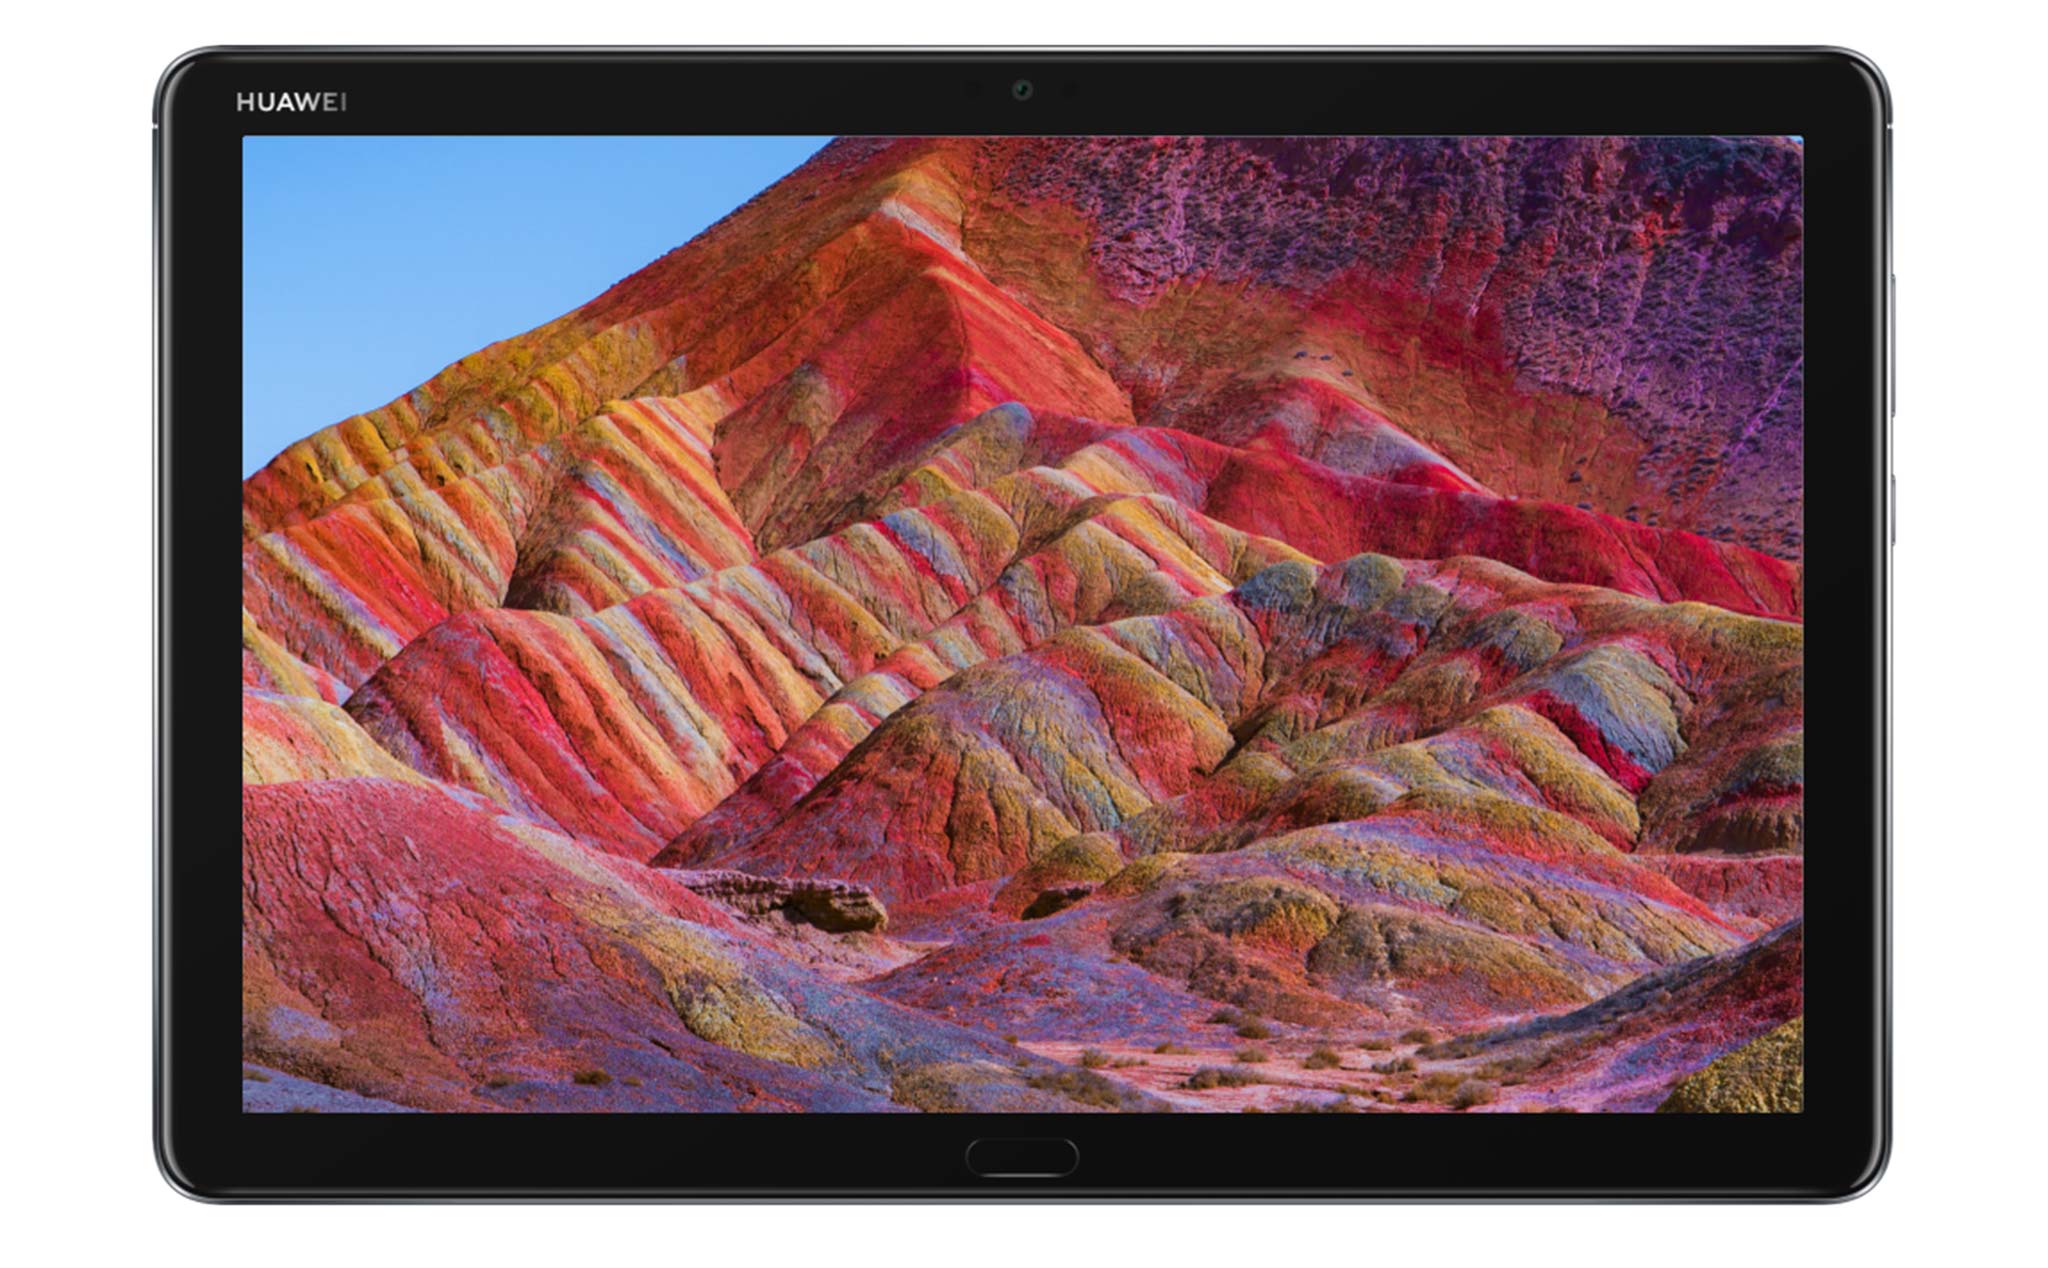 Huawei-mediapad-m5-lite-1080p-display.jpg